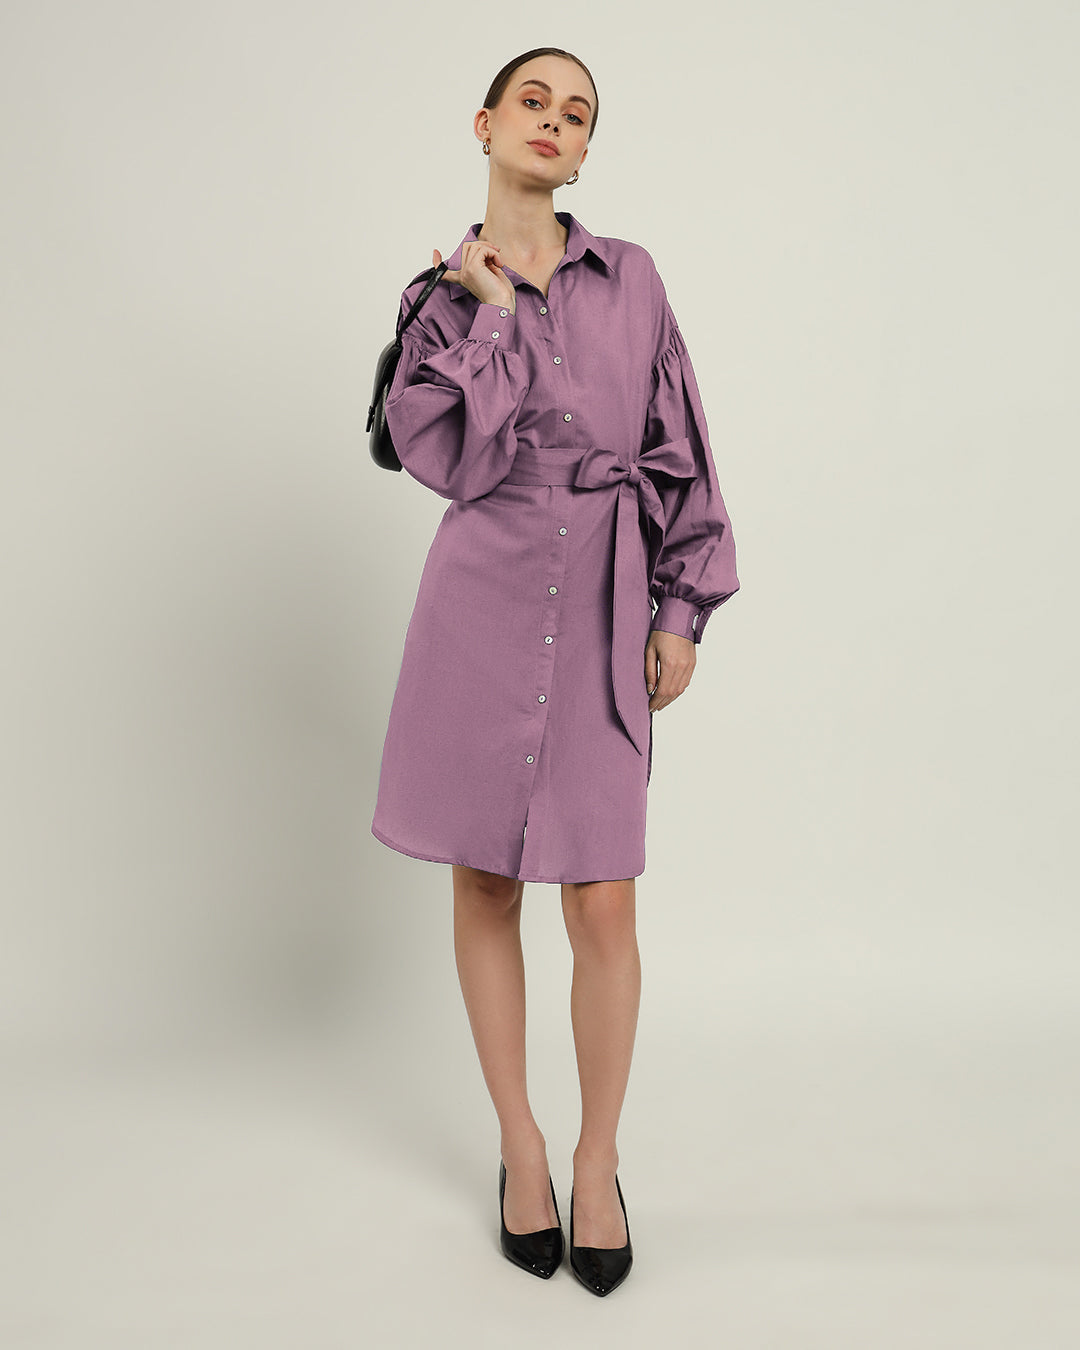 The Derby Purple Swirl Dress